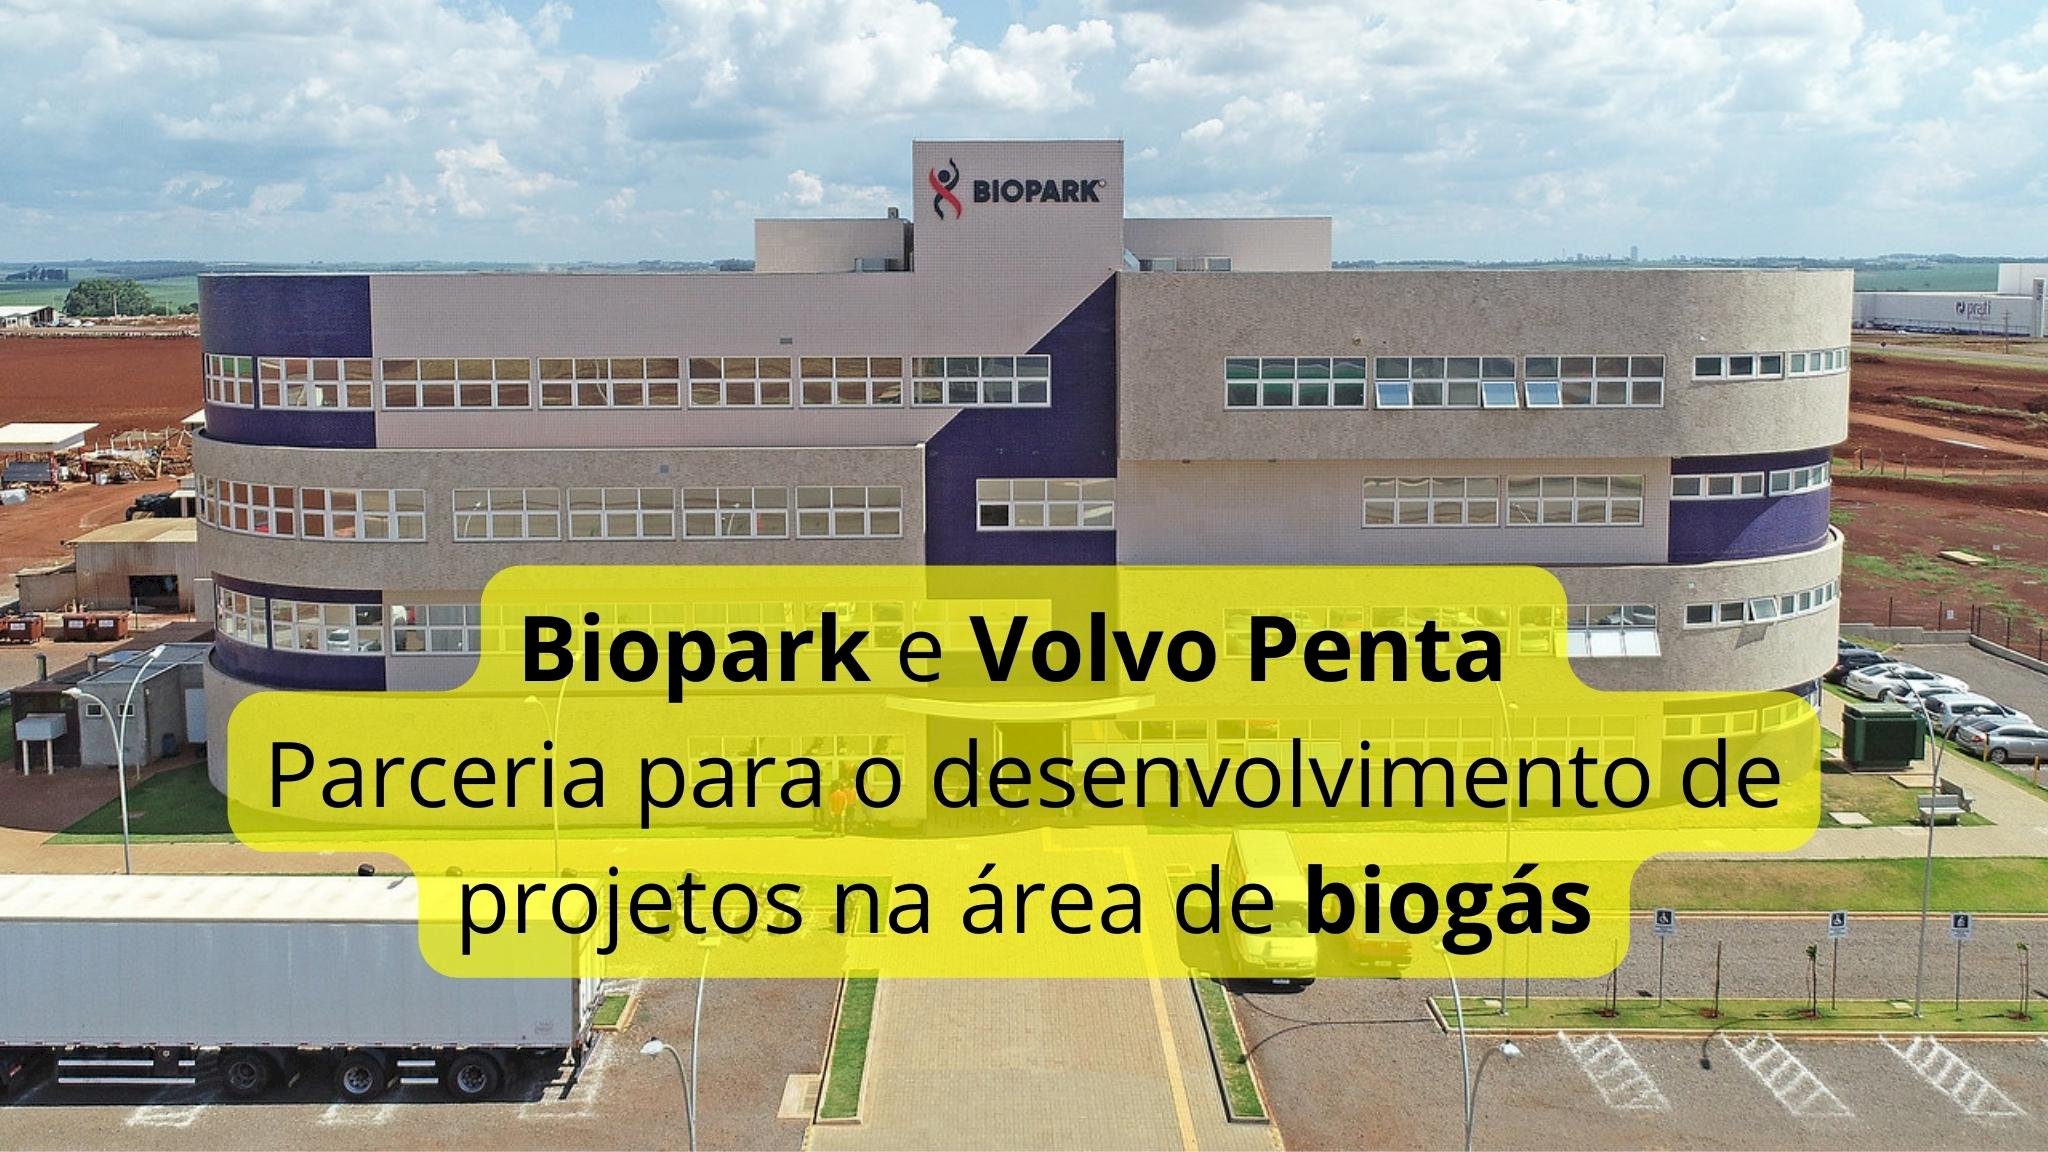 Biopark e Volvo Penta anunciam parceria para o desenvolvimento de projetos na área de biogás